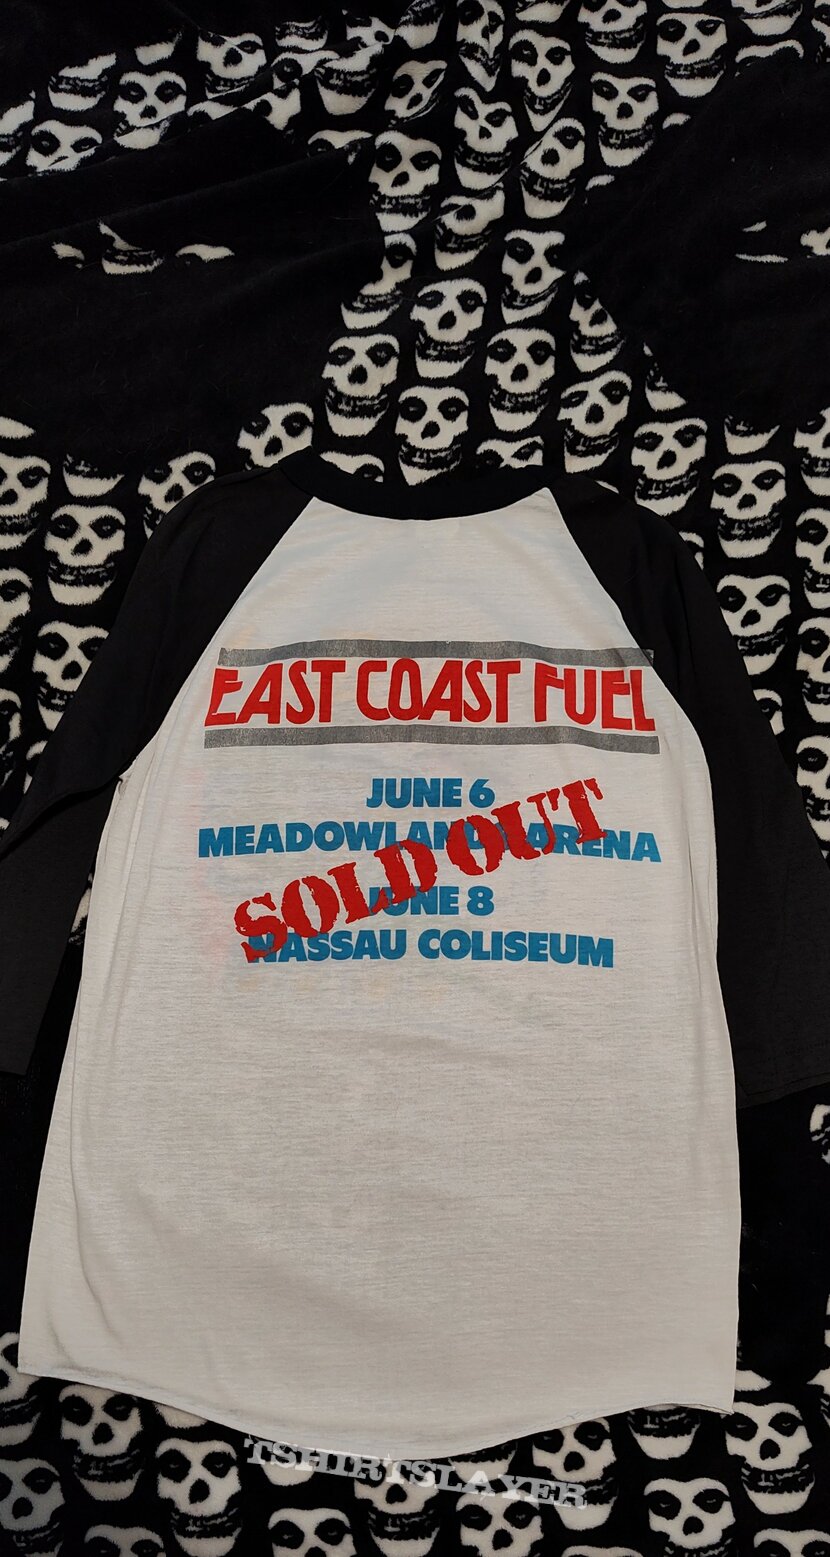 Judas Priest - Turbo Tour Shirt